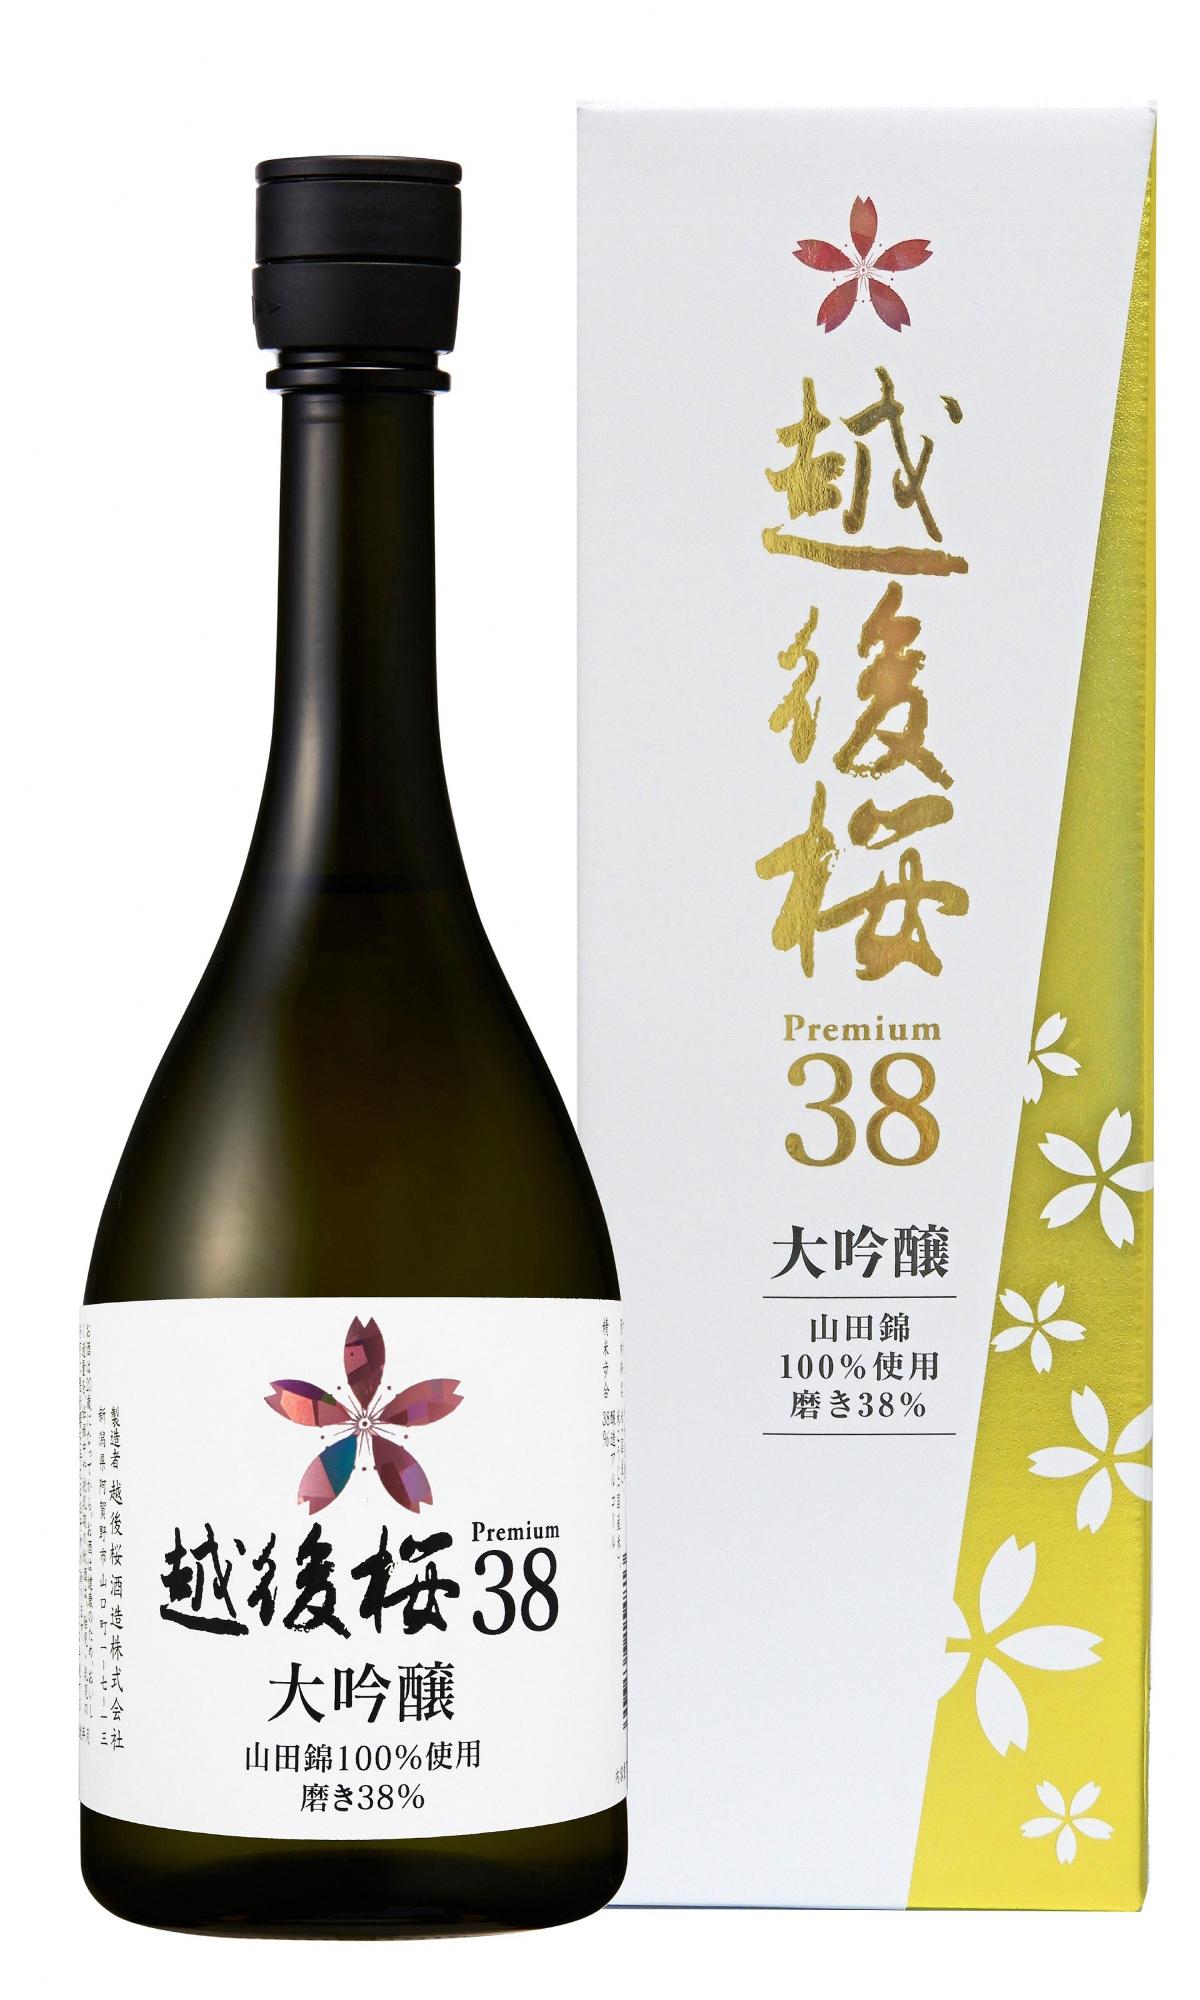 新作製品、世界最高品質人気! 越後桜酒造 大吟醸 720ml 日本酒 materialworldblog.com